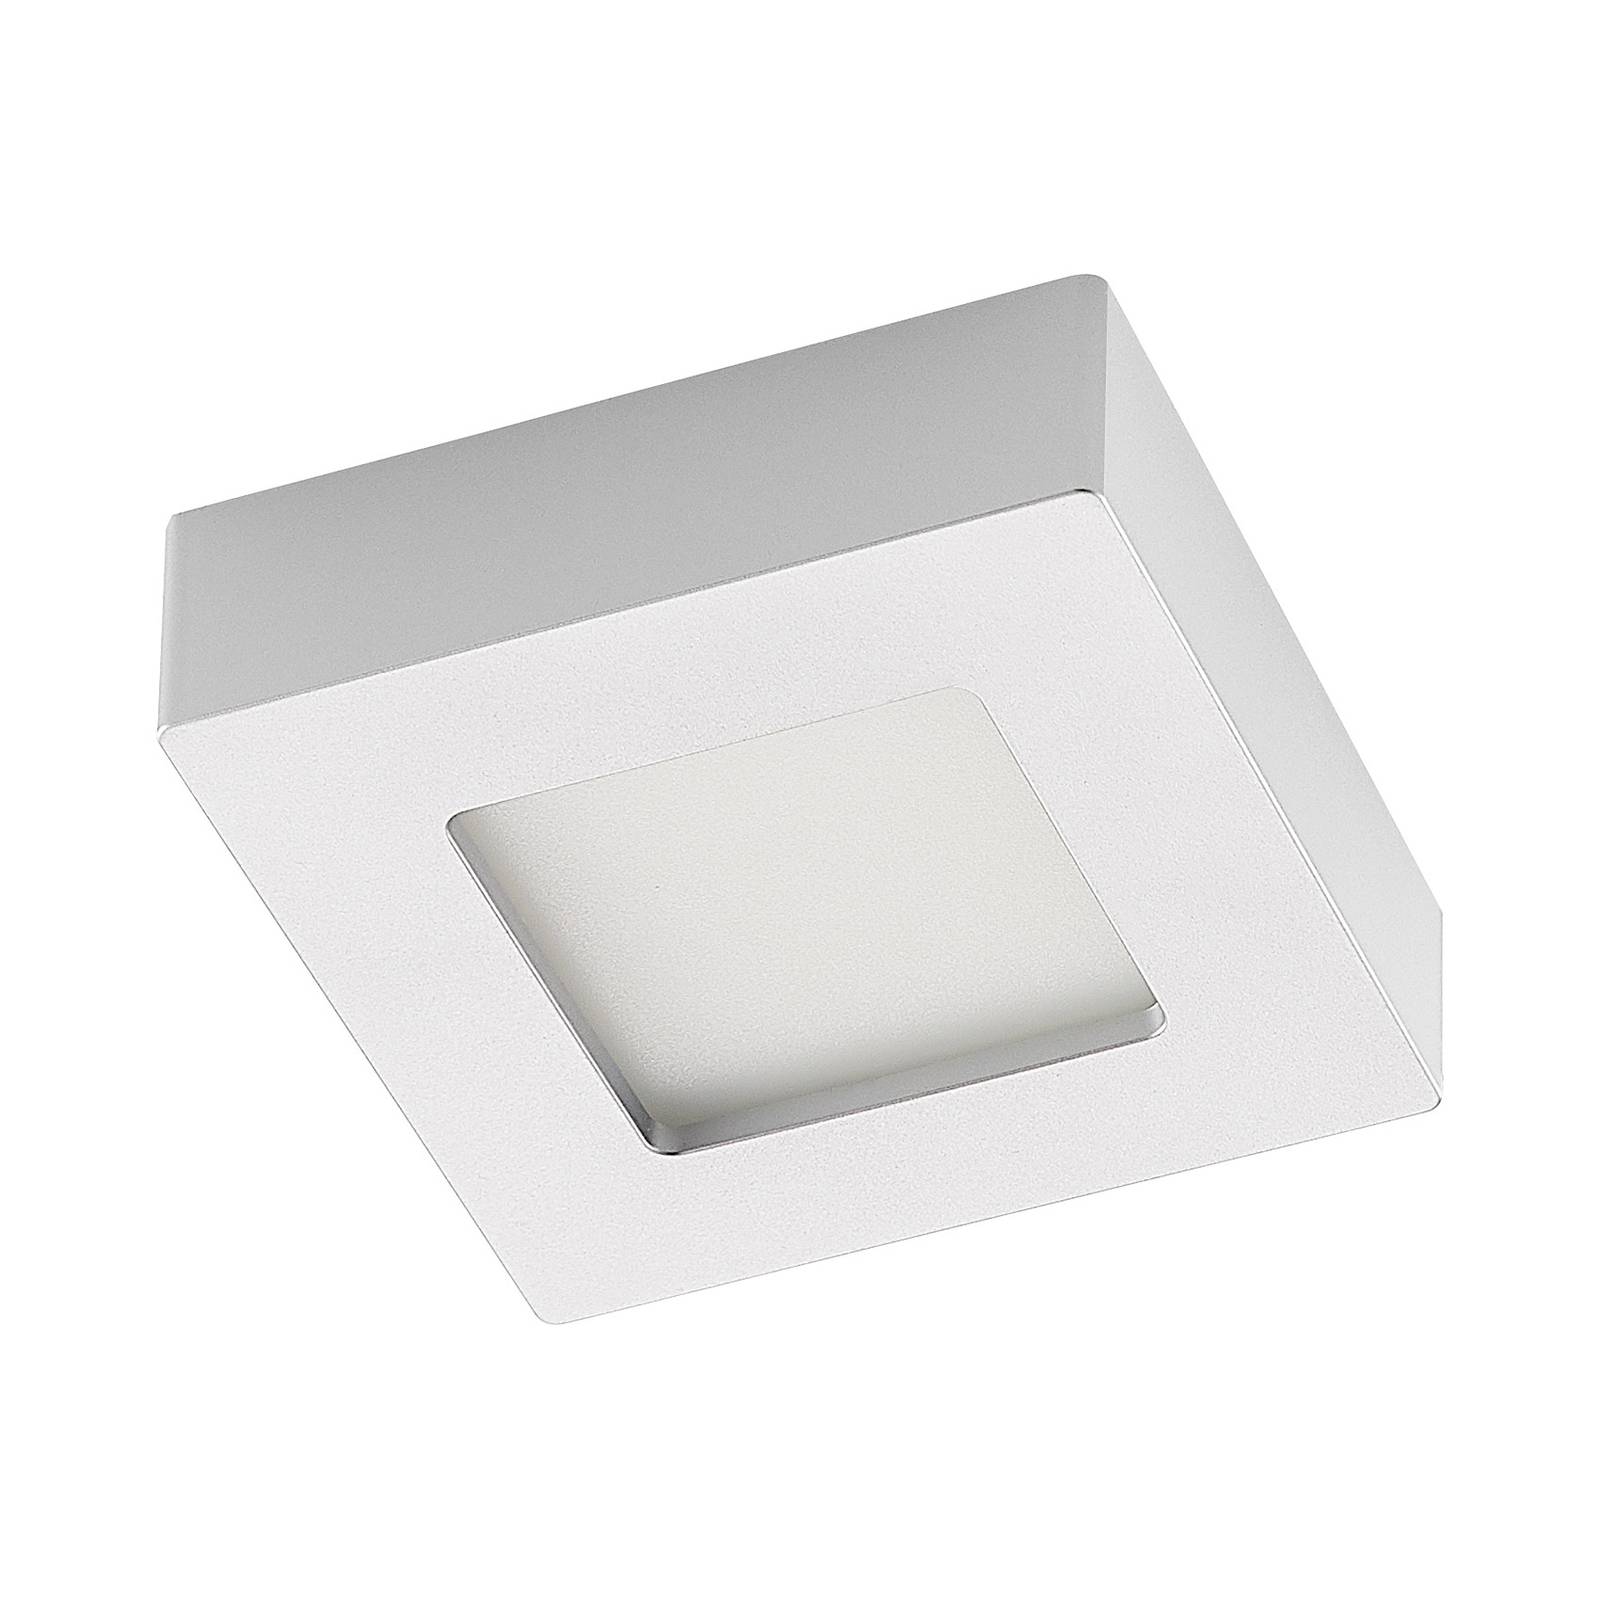 Image of Prios Alette plafonnier LED, argenté, 12,2 cm 4251911707649